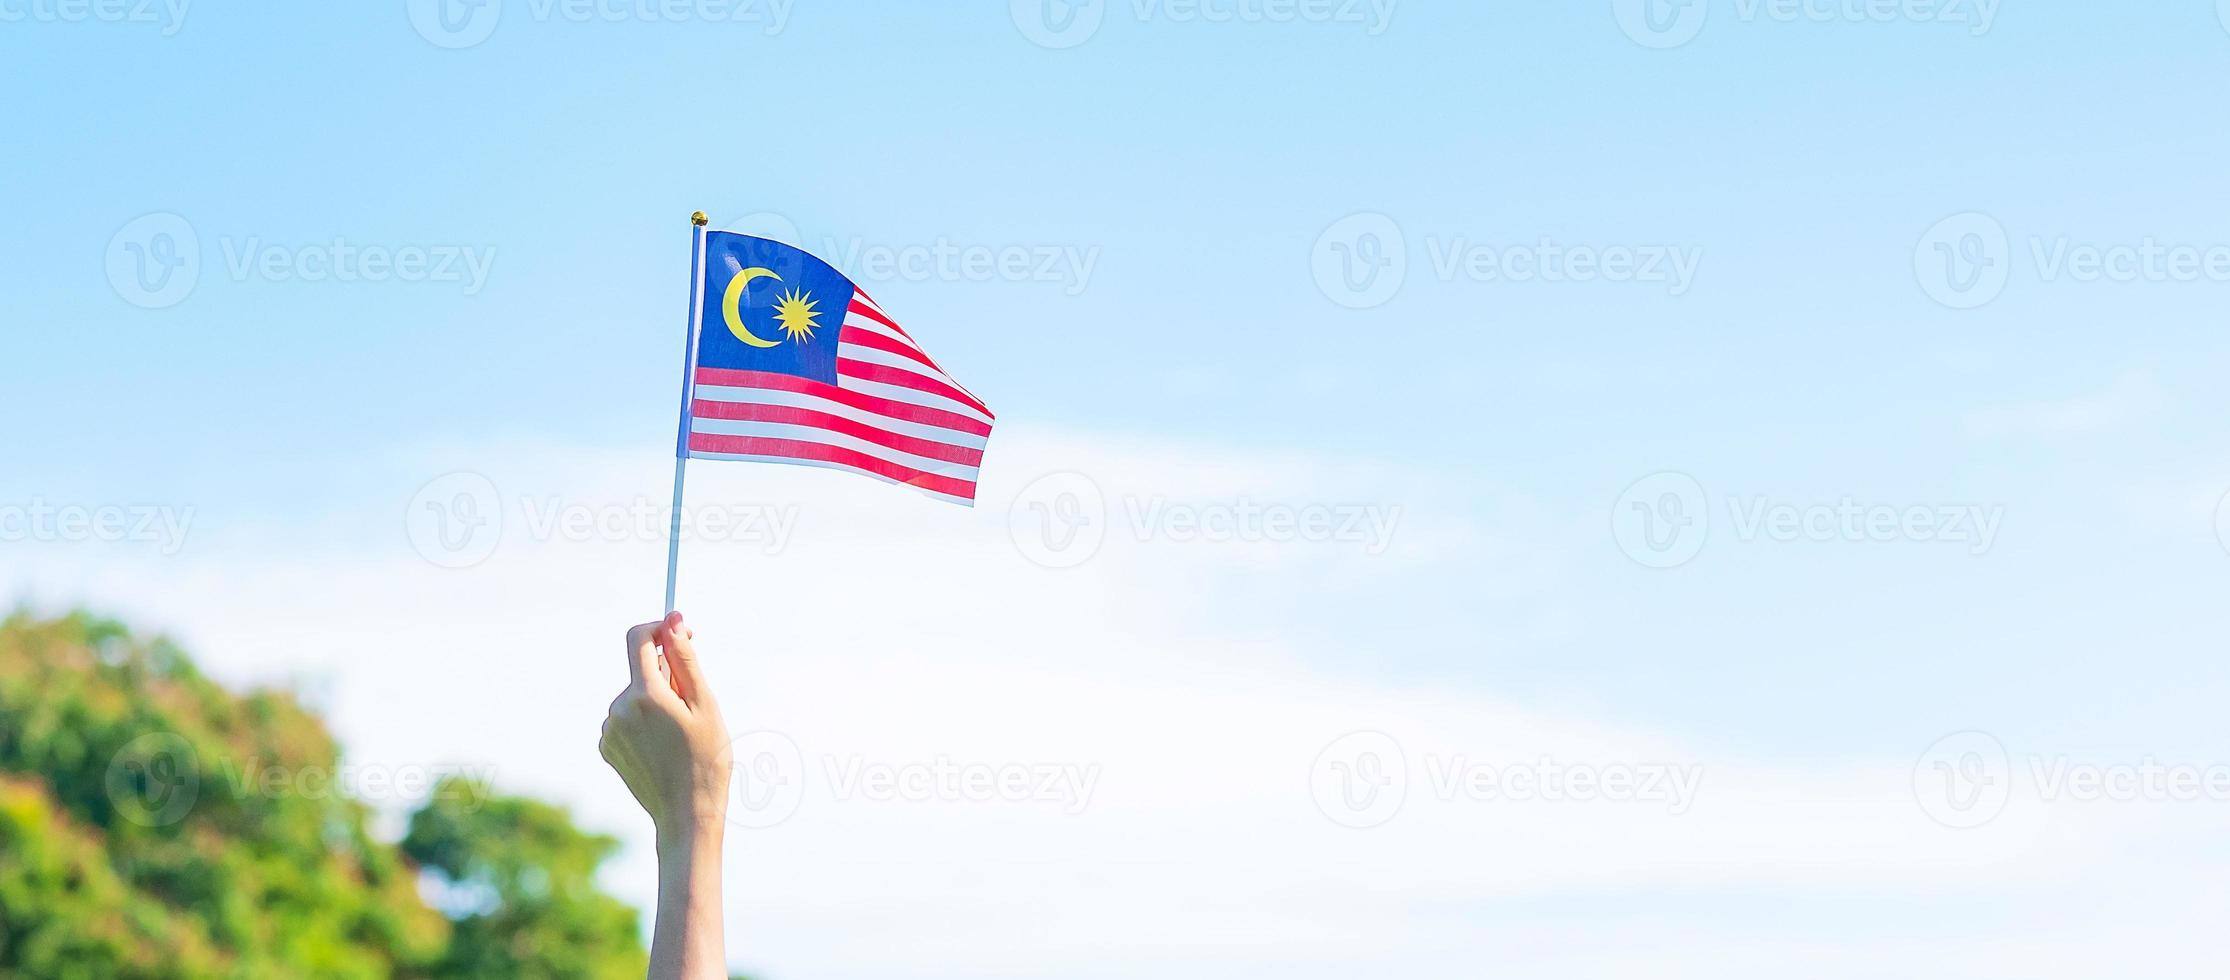 hand som håller Malaysias flagga på blå himmel bakgrund. september malaysia nationaldag och augusti självständighetsdag foto